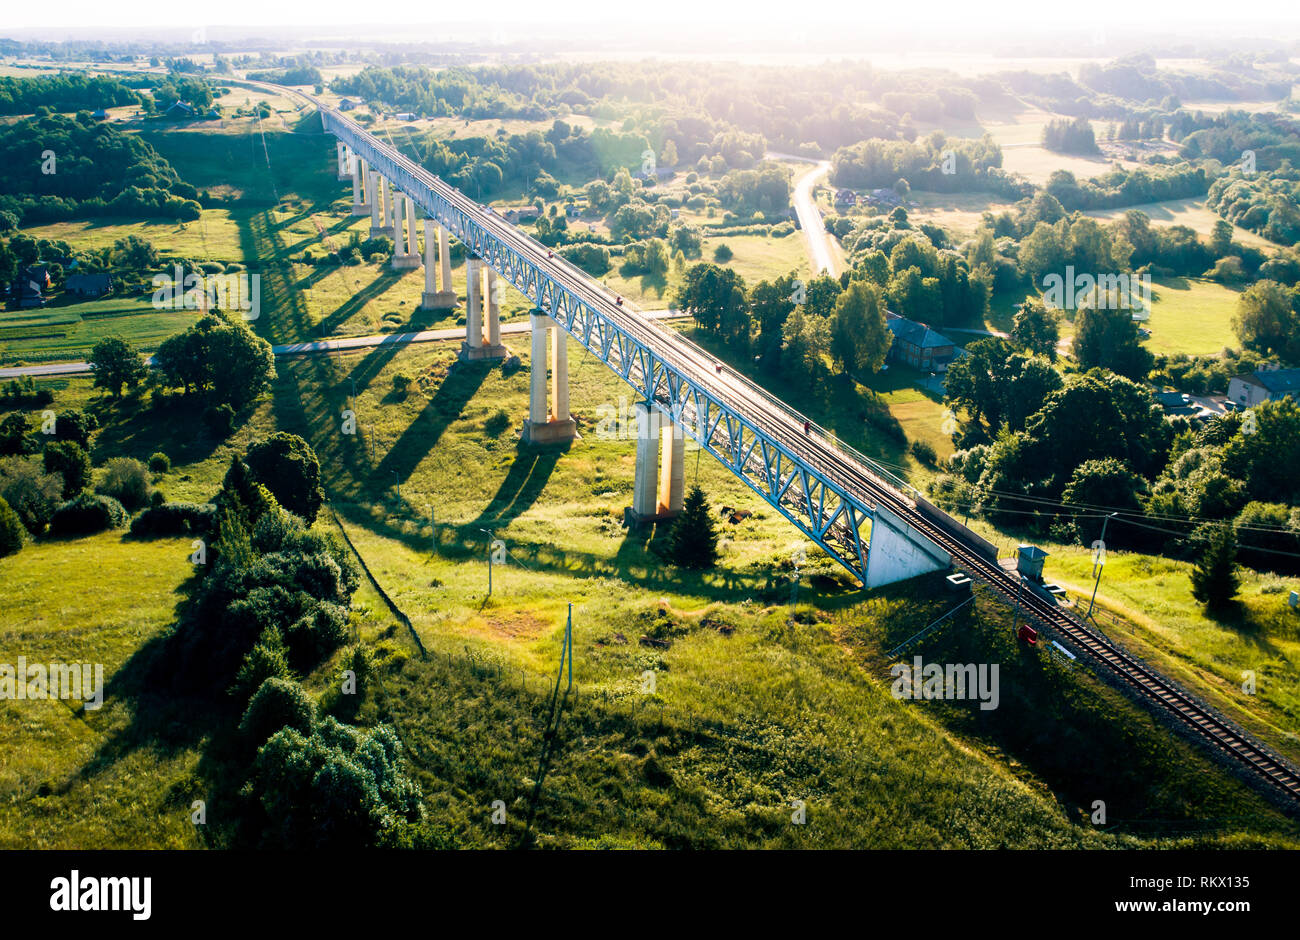 Railway Bridge of Lyduvenai, Lithuania Stock Photo